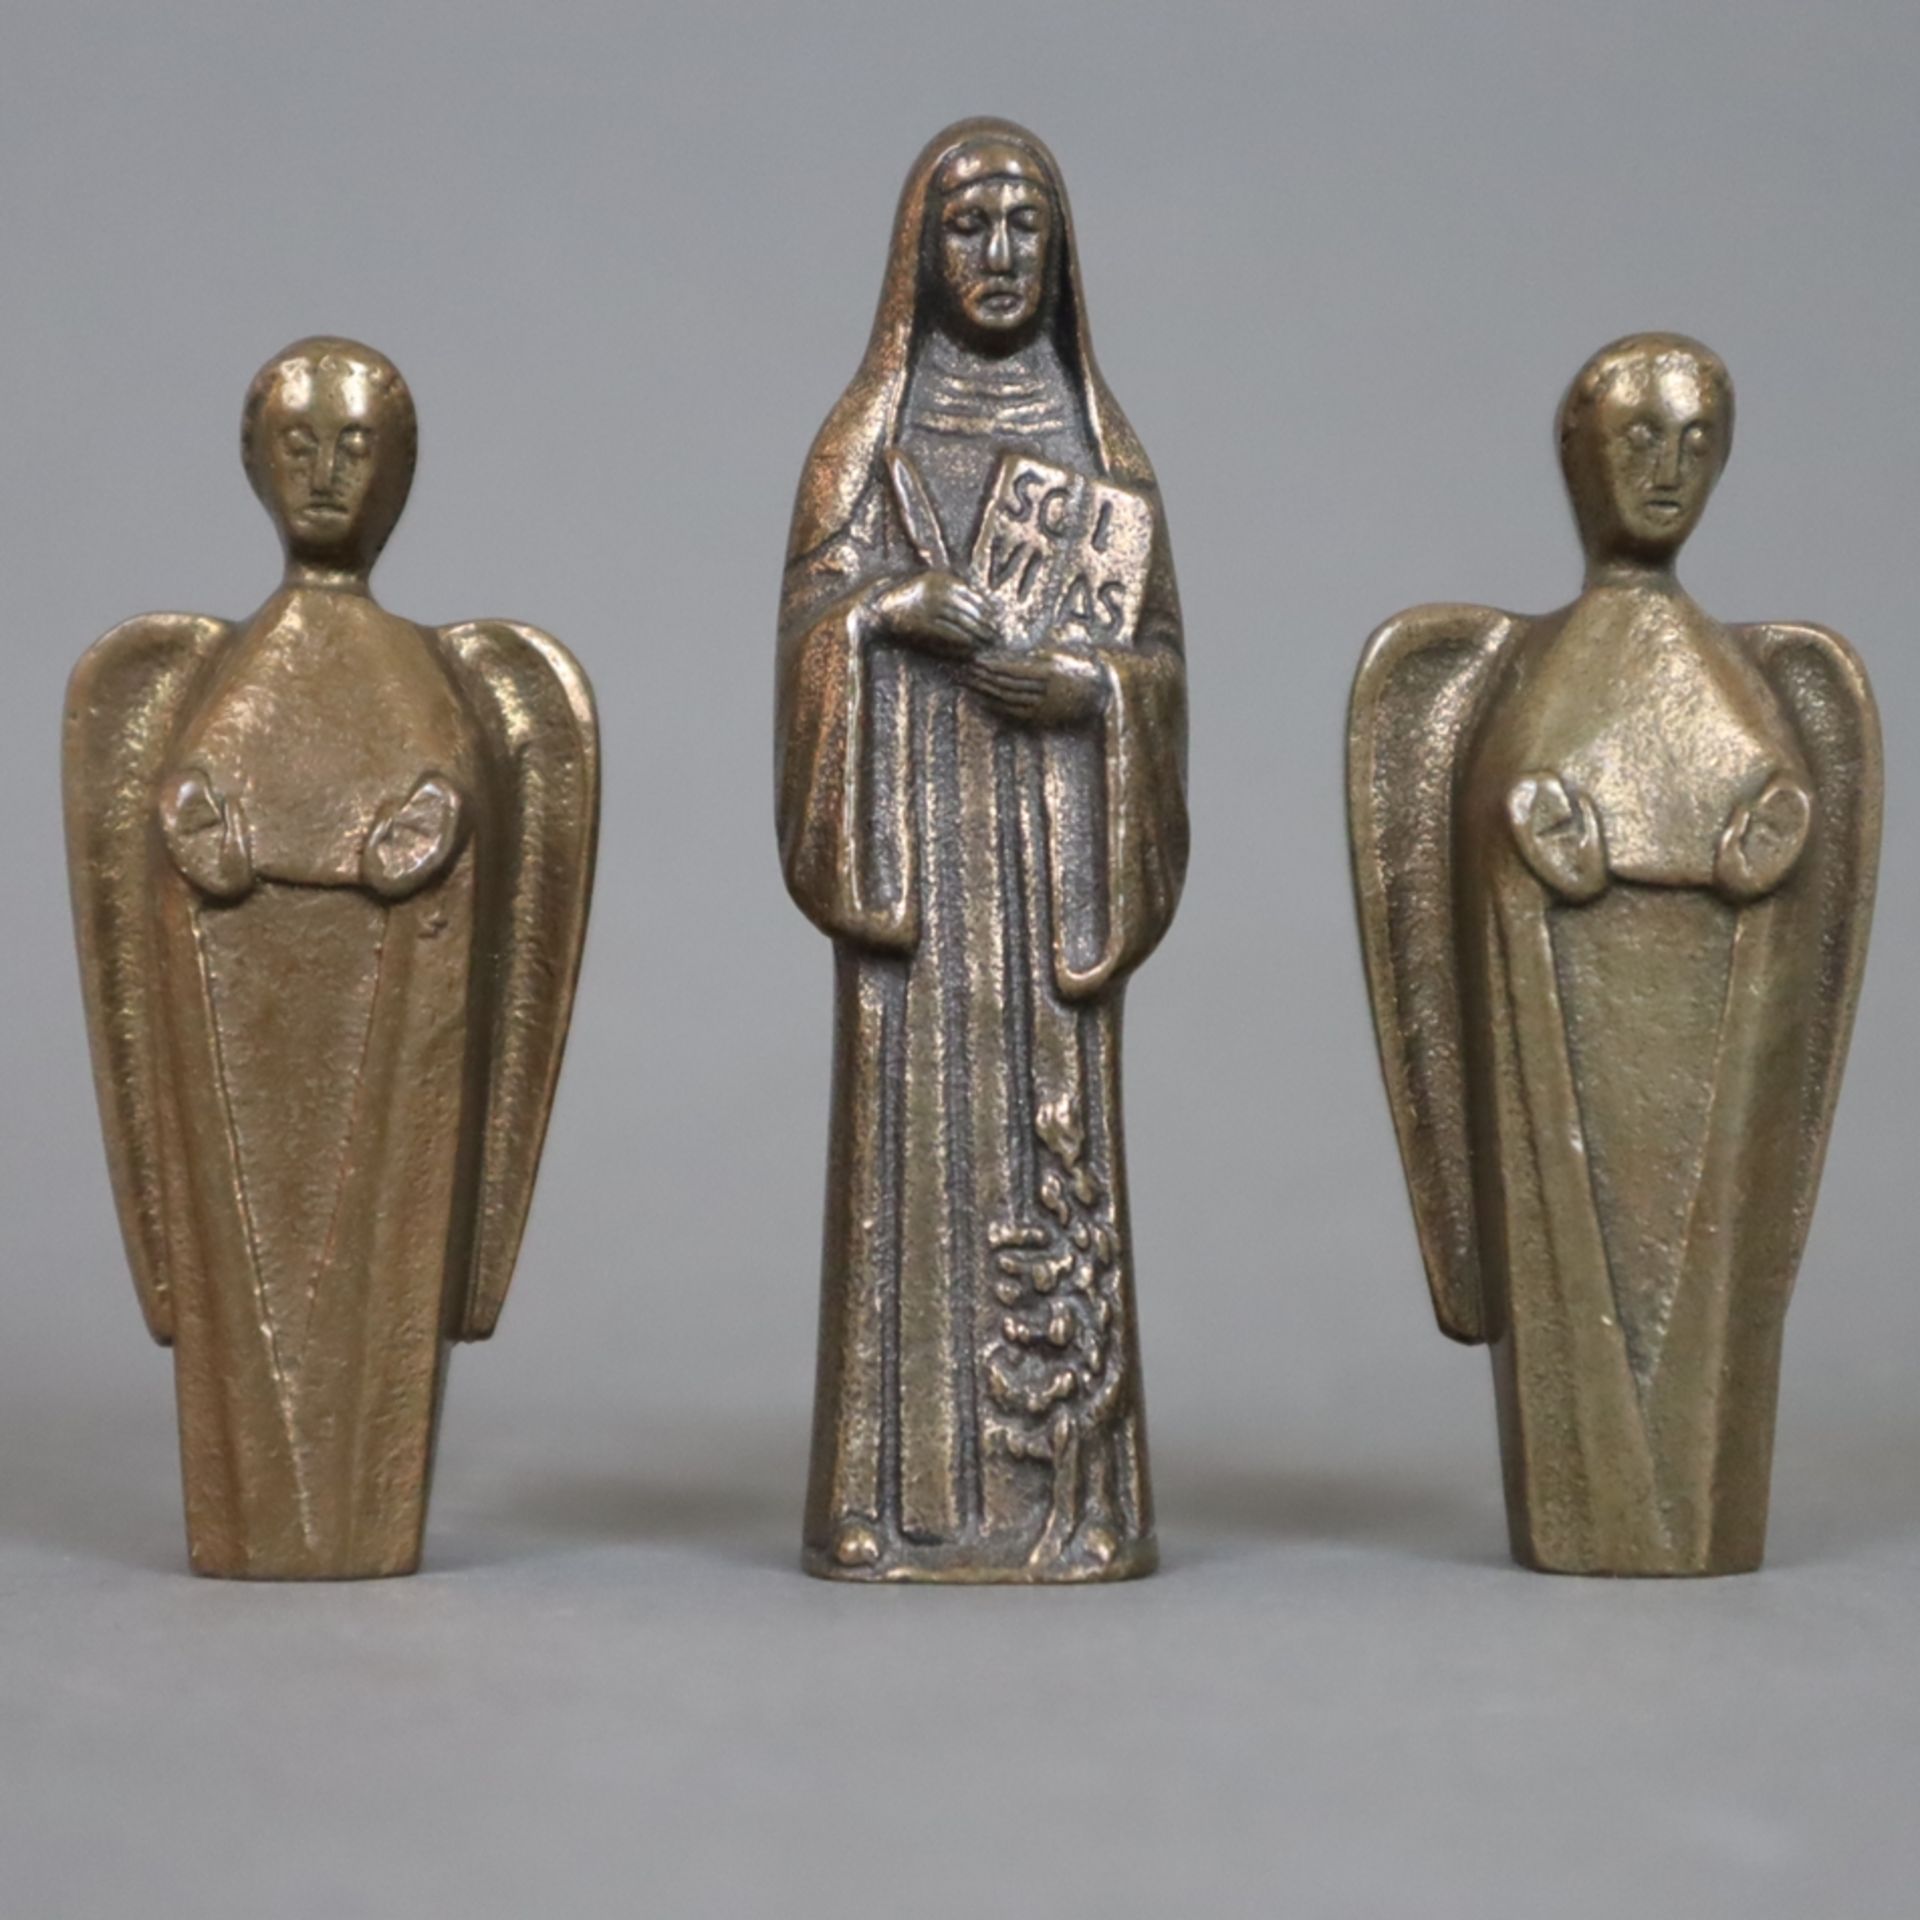 Sechs Miniaturfiguren - 20.Jh., Bronze, braun patiniert, 1x Apostel Paulus, 3x Heiligenfiguren, rüc - Image 3 of 3